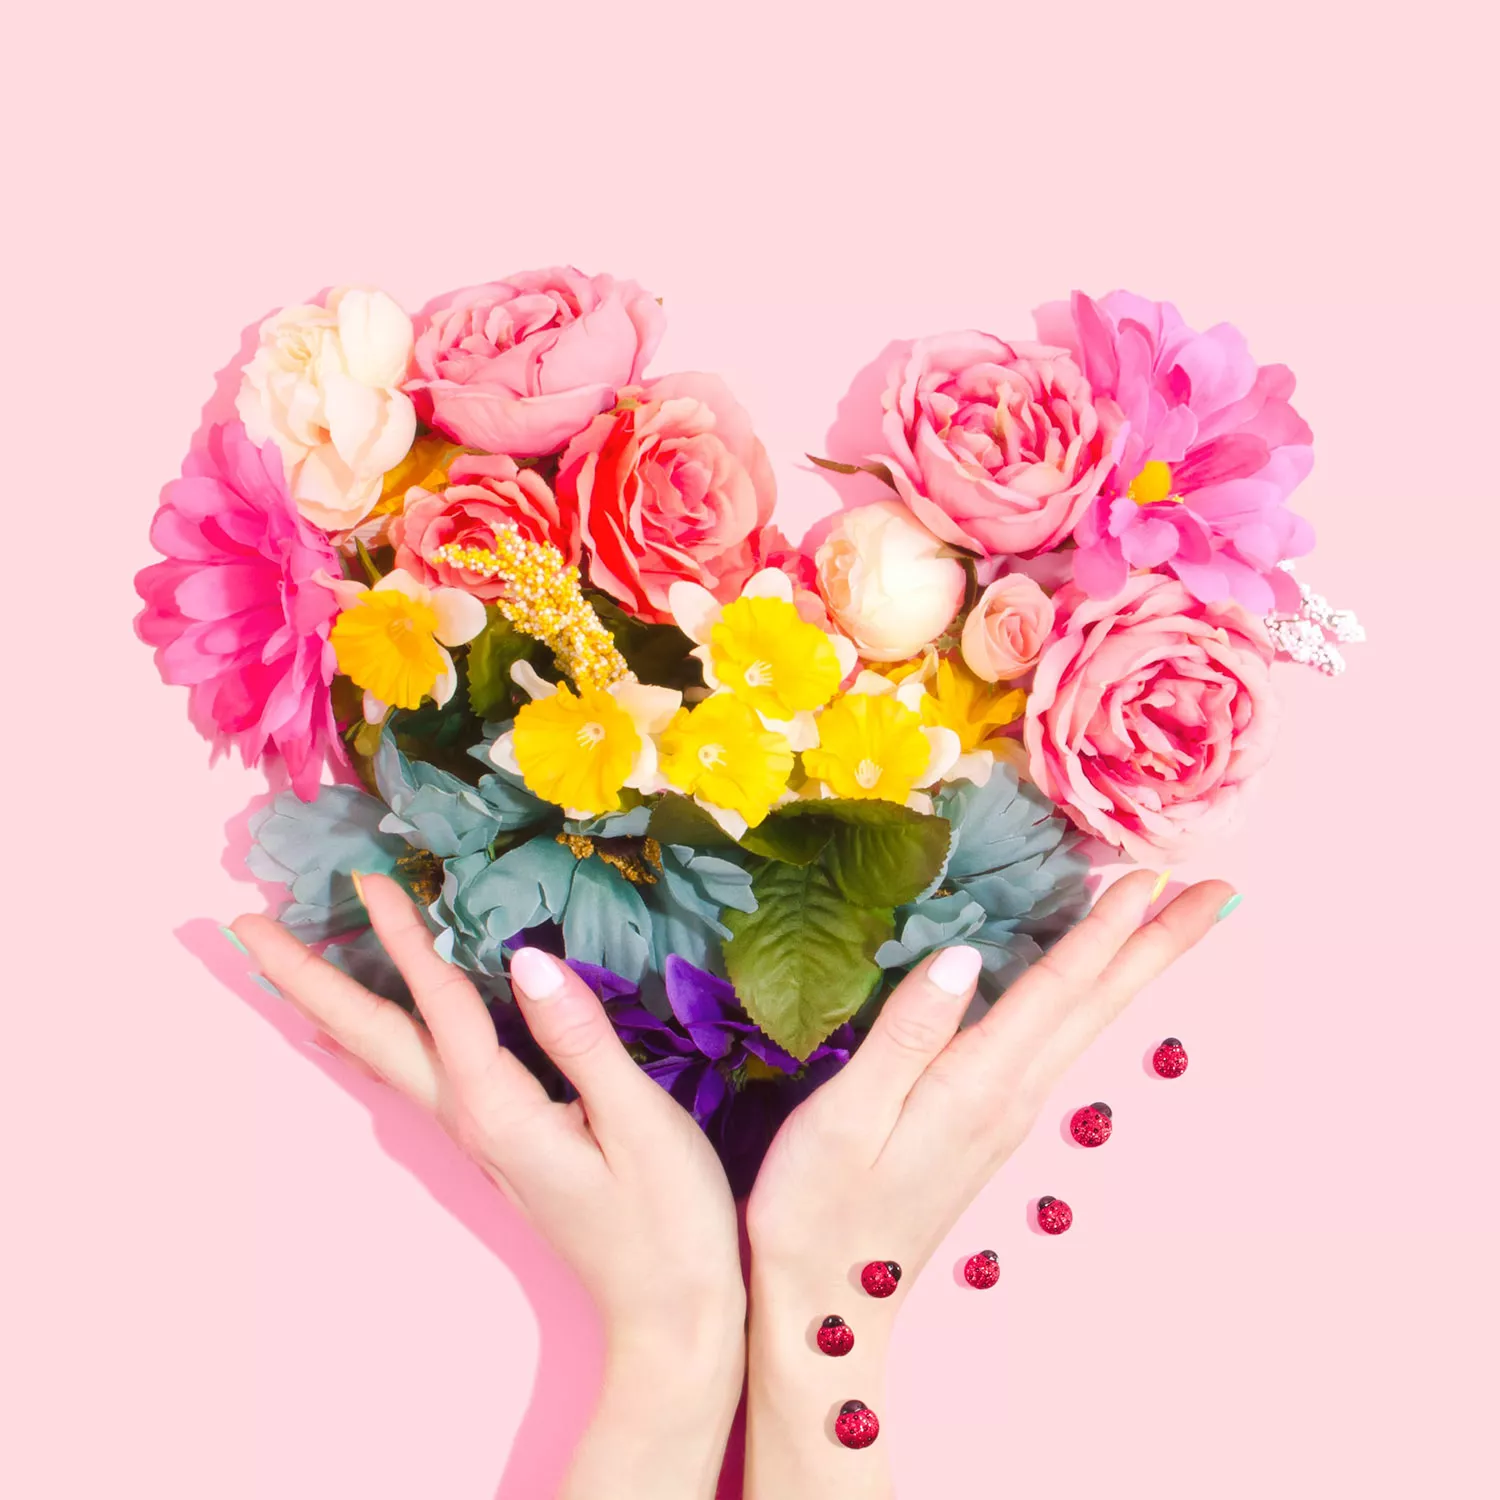 選擇對方喜歡的花作為求婚花束花種選擇是個好主意。